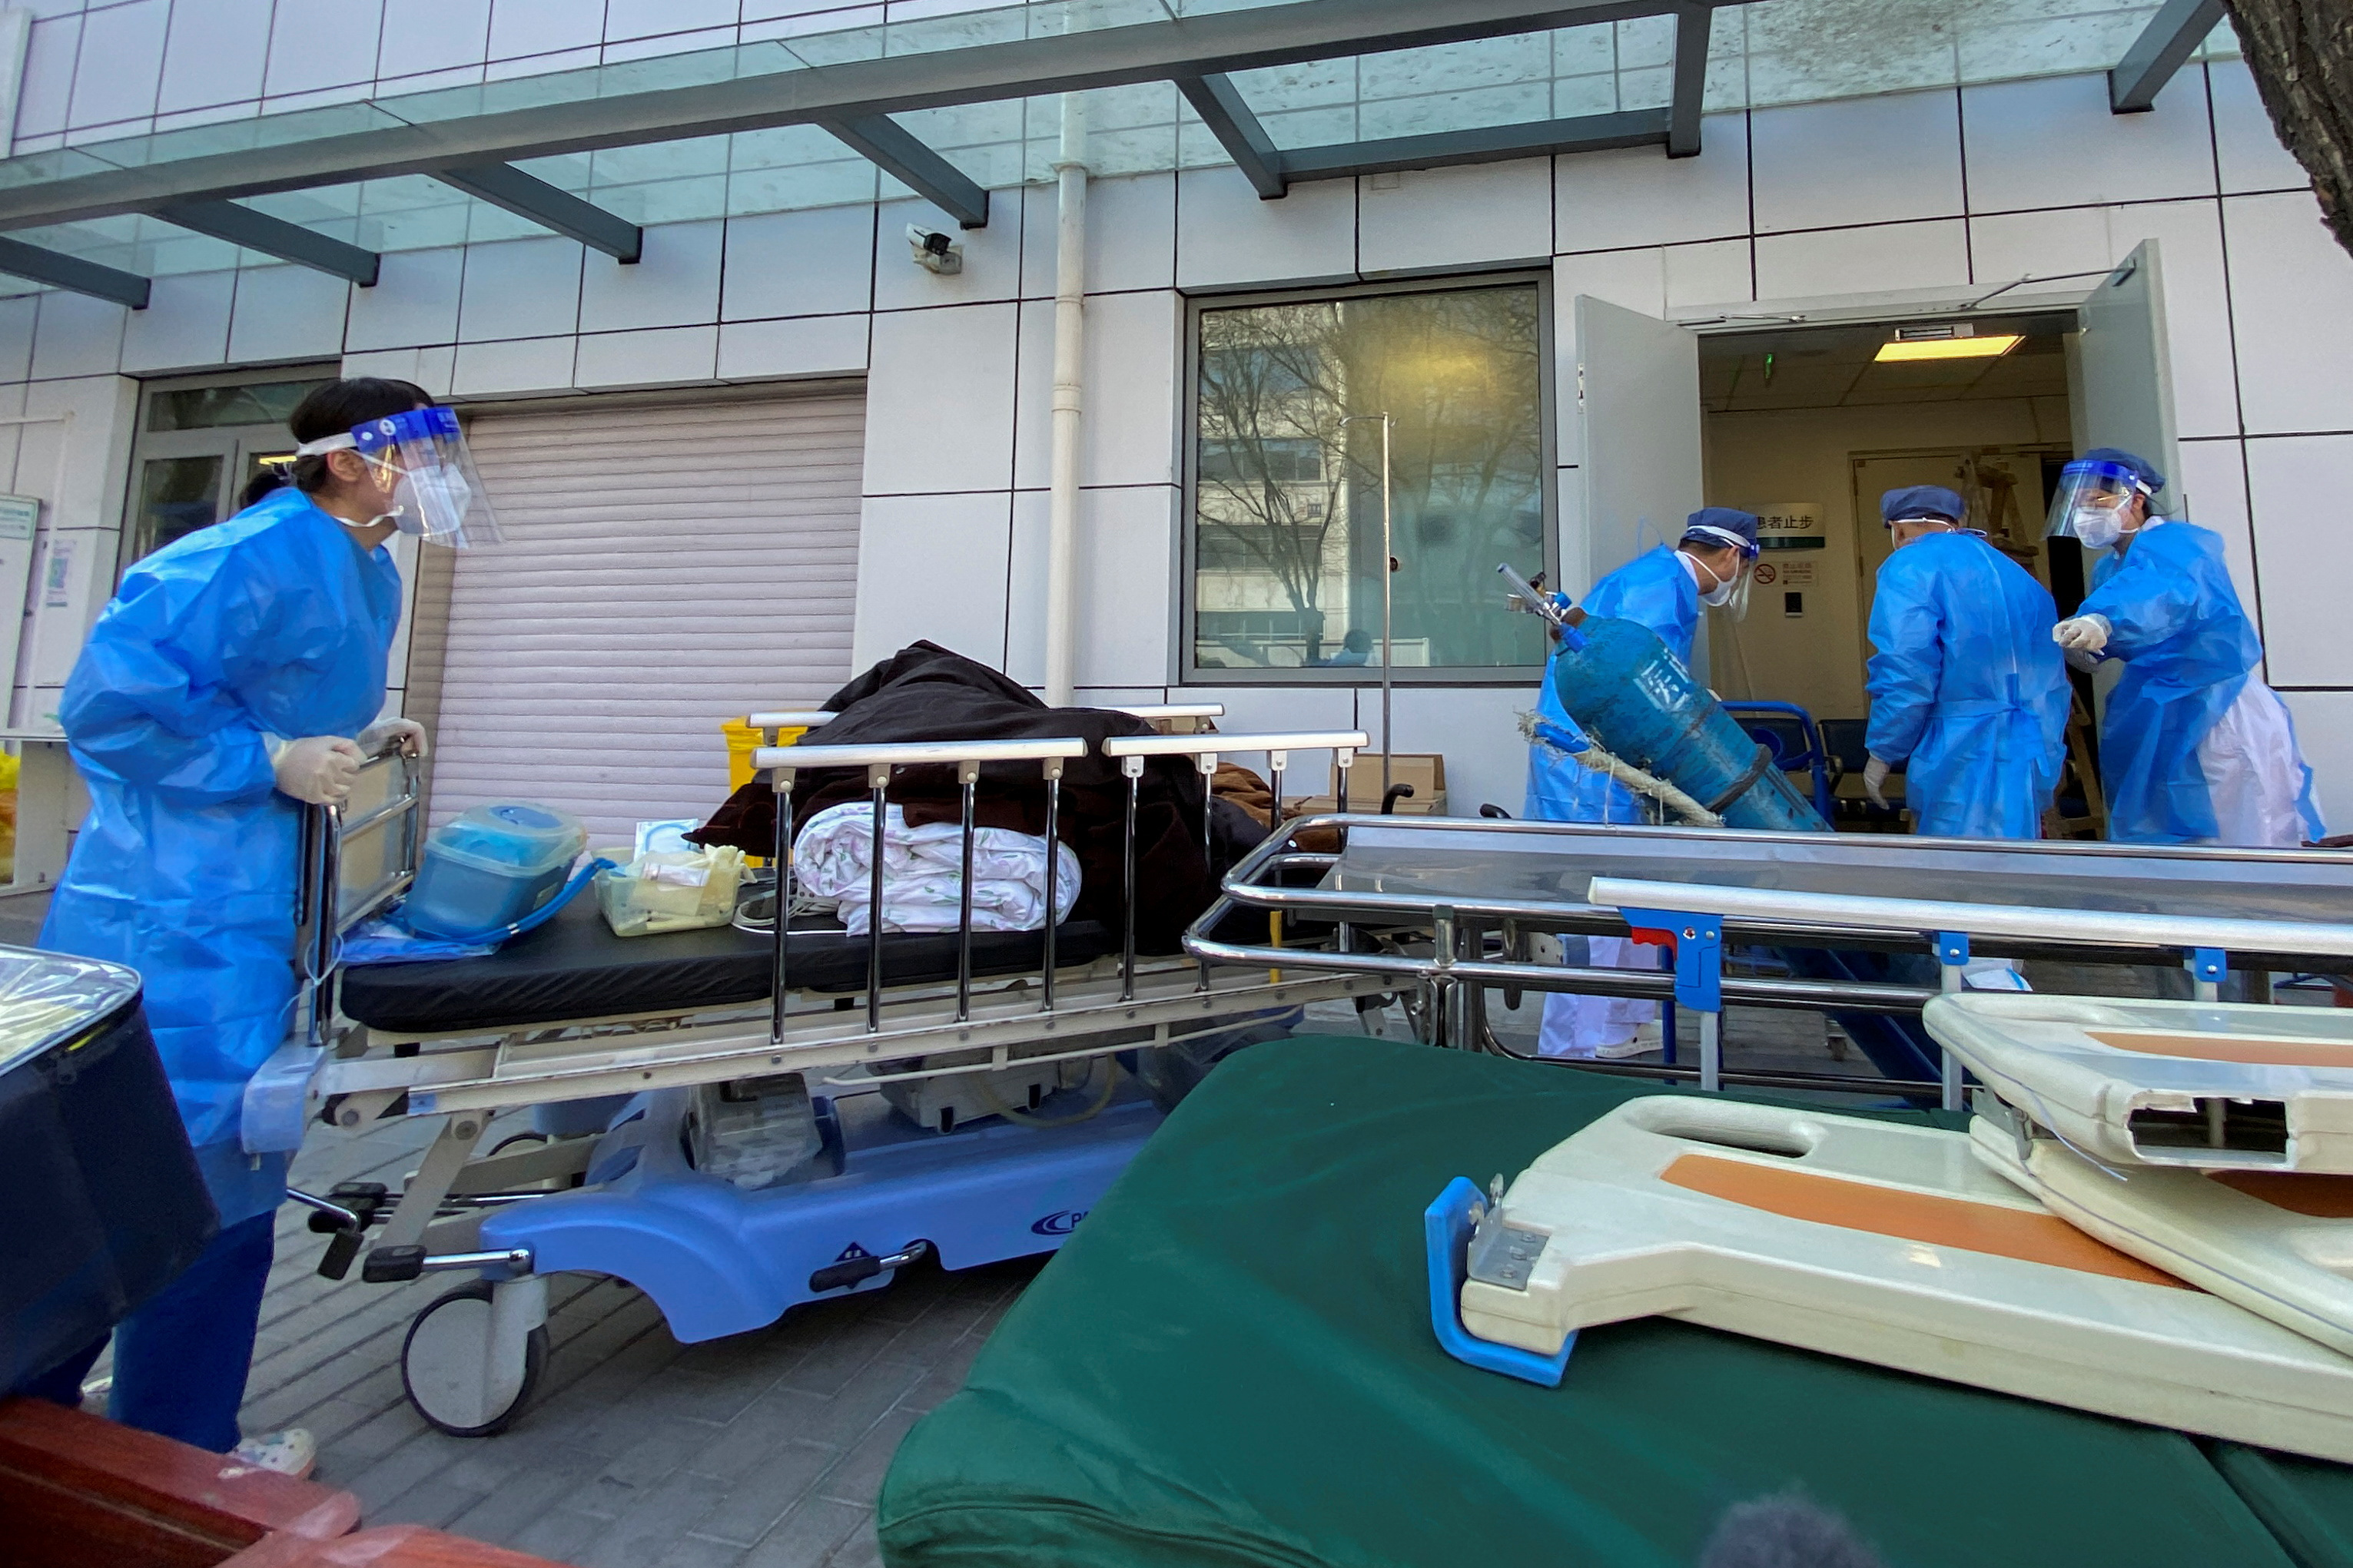 Los hospitales en China están desbordados de pacientes con COVID-19 (REUTERS/Thomas Peter)